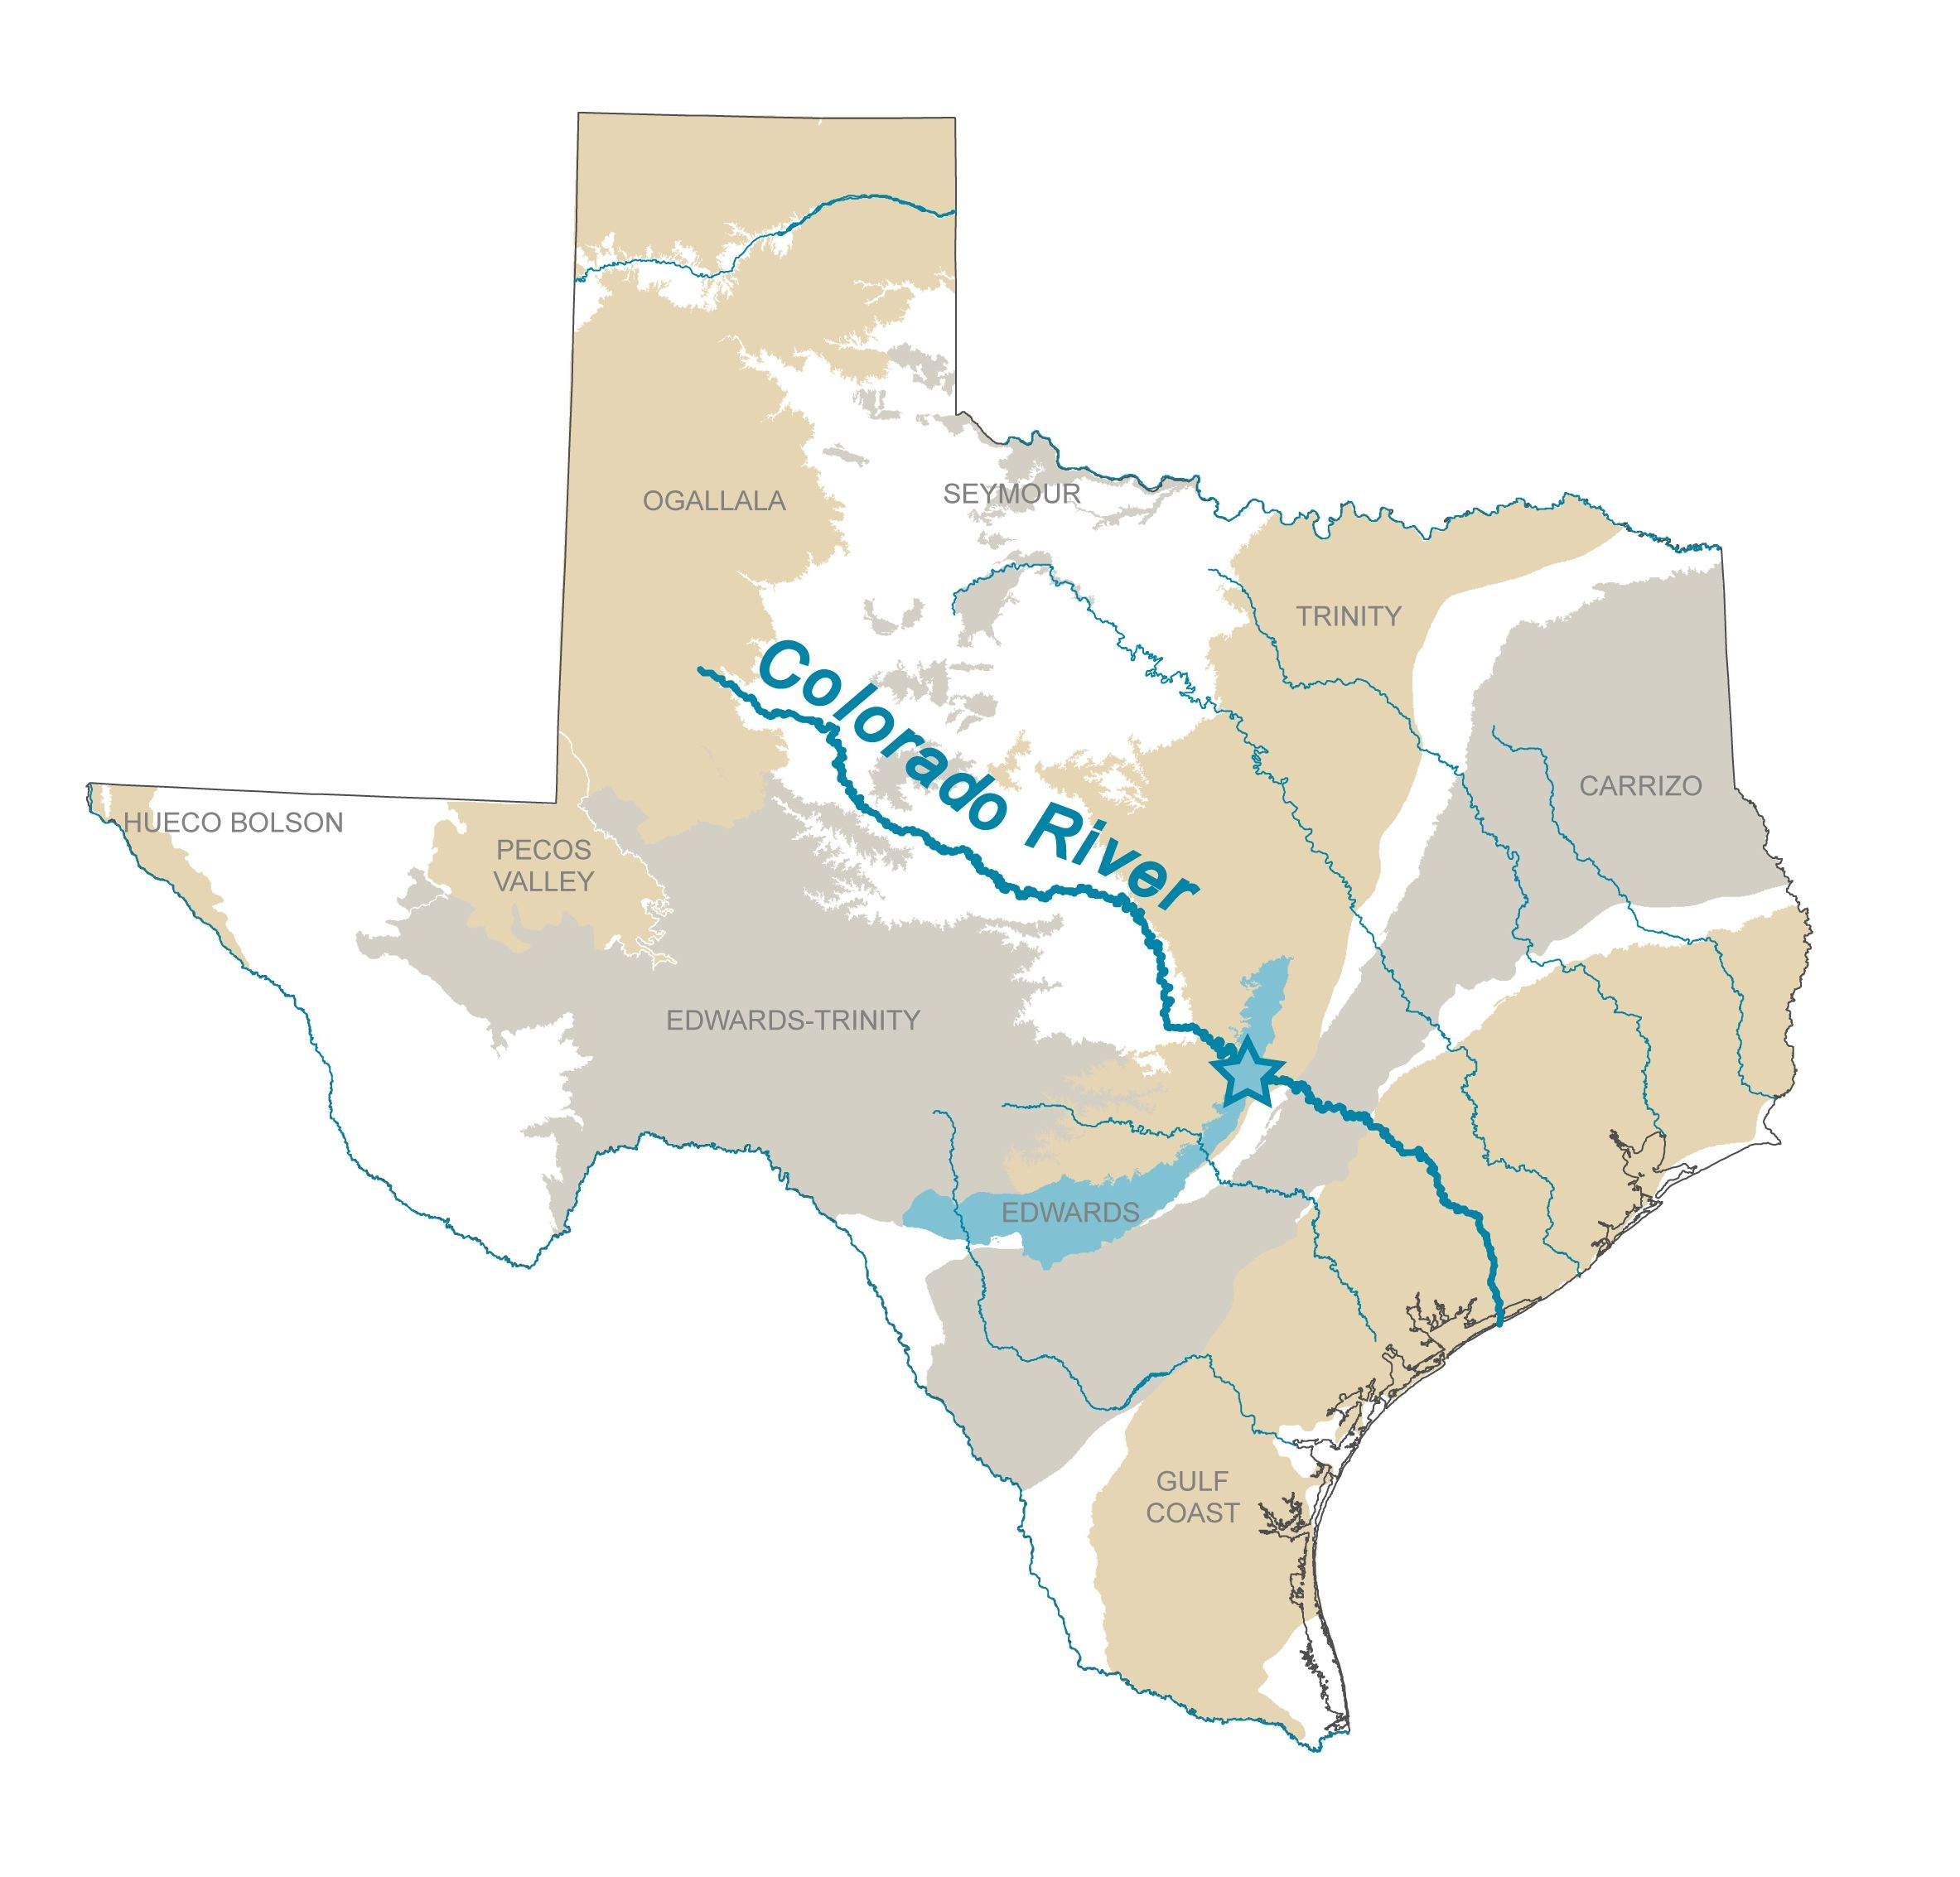 Colorado River Map Texas - Touran - Colorado River Map Texas